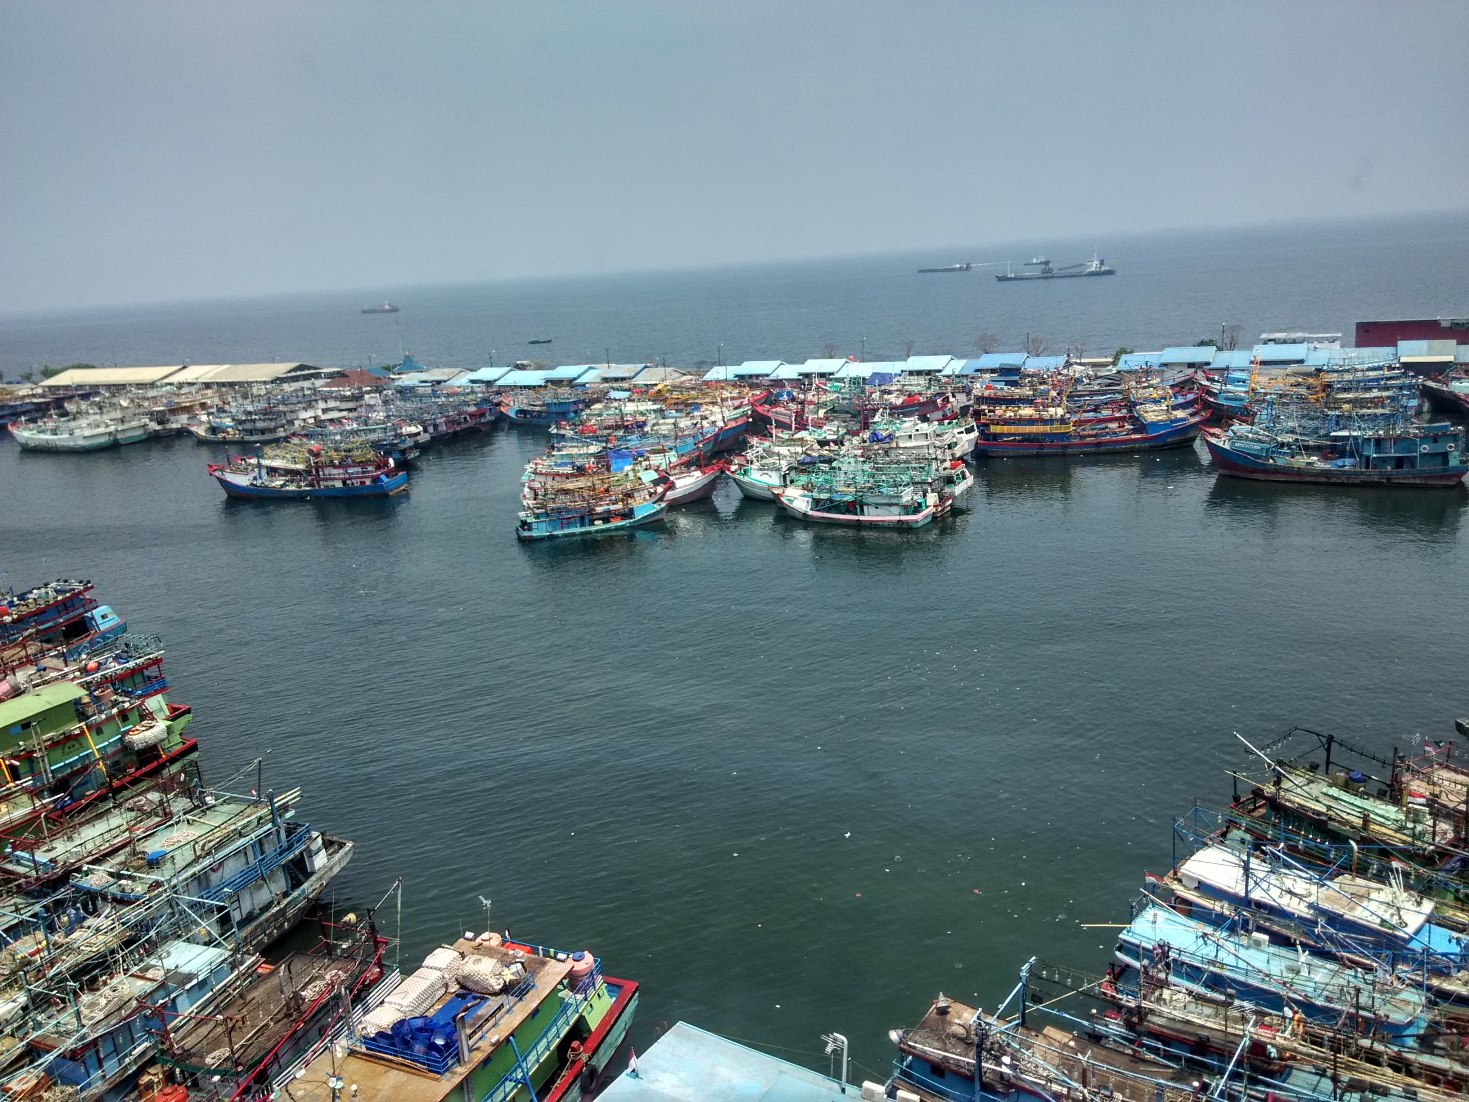 Puluhan kapal penangkap ikan yang bersandar di Pelabuhan Perikanan Nizam Zachman Muara Baru, Jakarta Utara pada Selasa (19/01/2016) siang. Kapal-kapal tersebut tidak beroperasi karena tidak mempunyai izin atau sedang mengurus izin melaut dari KKP. Foto : M Ambari